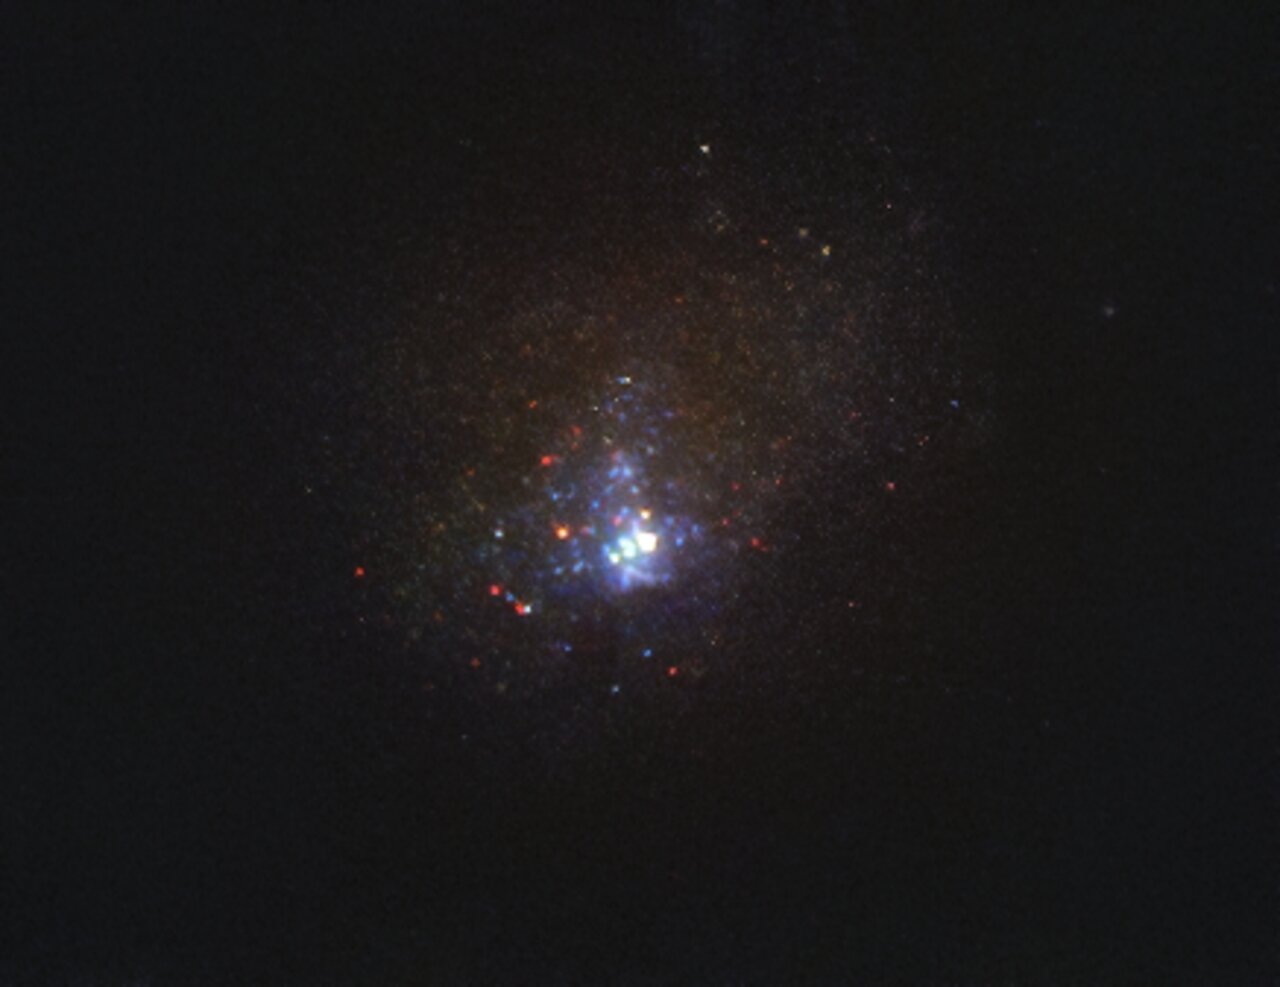 Фото галактики Кінман, зроблене телескопом «Габбл» у 2011 році, коли там ще була зникла зірка, фото: ESO